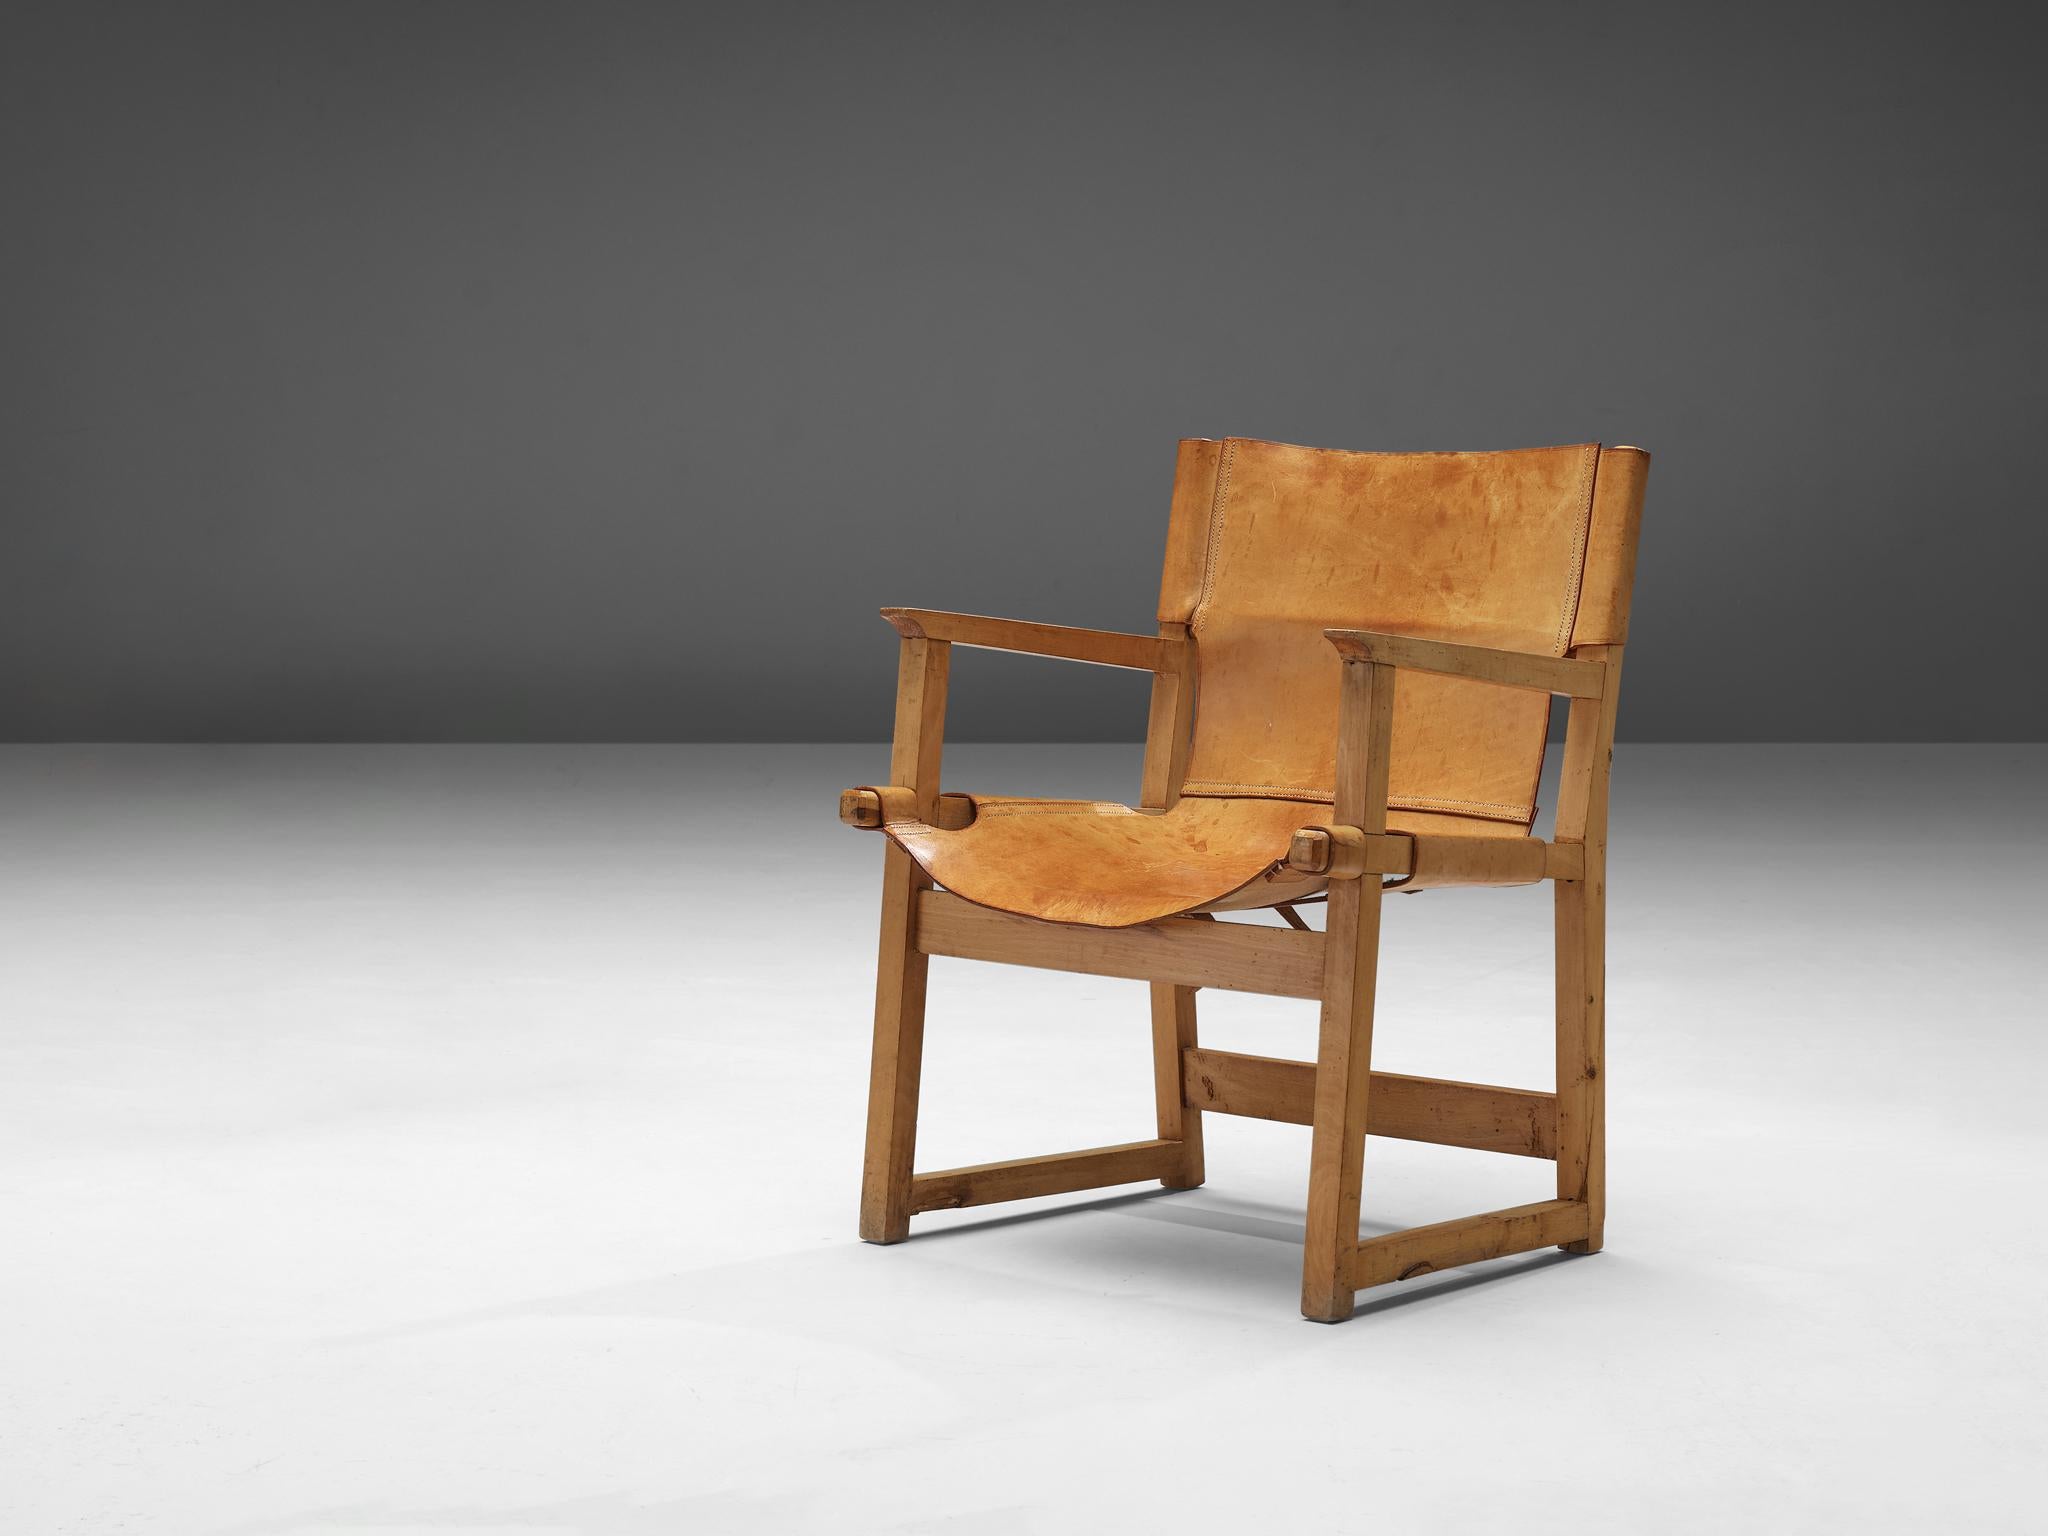 Paco Muñoz, fauteuil, cuir, hêtre, Espagne, années 1950

Fauteuil Safari ou 